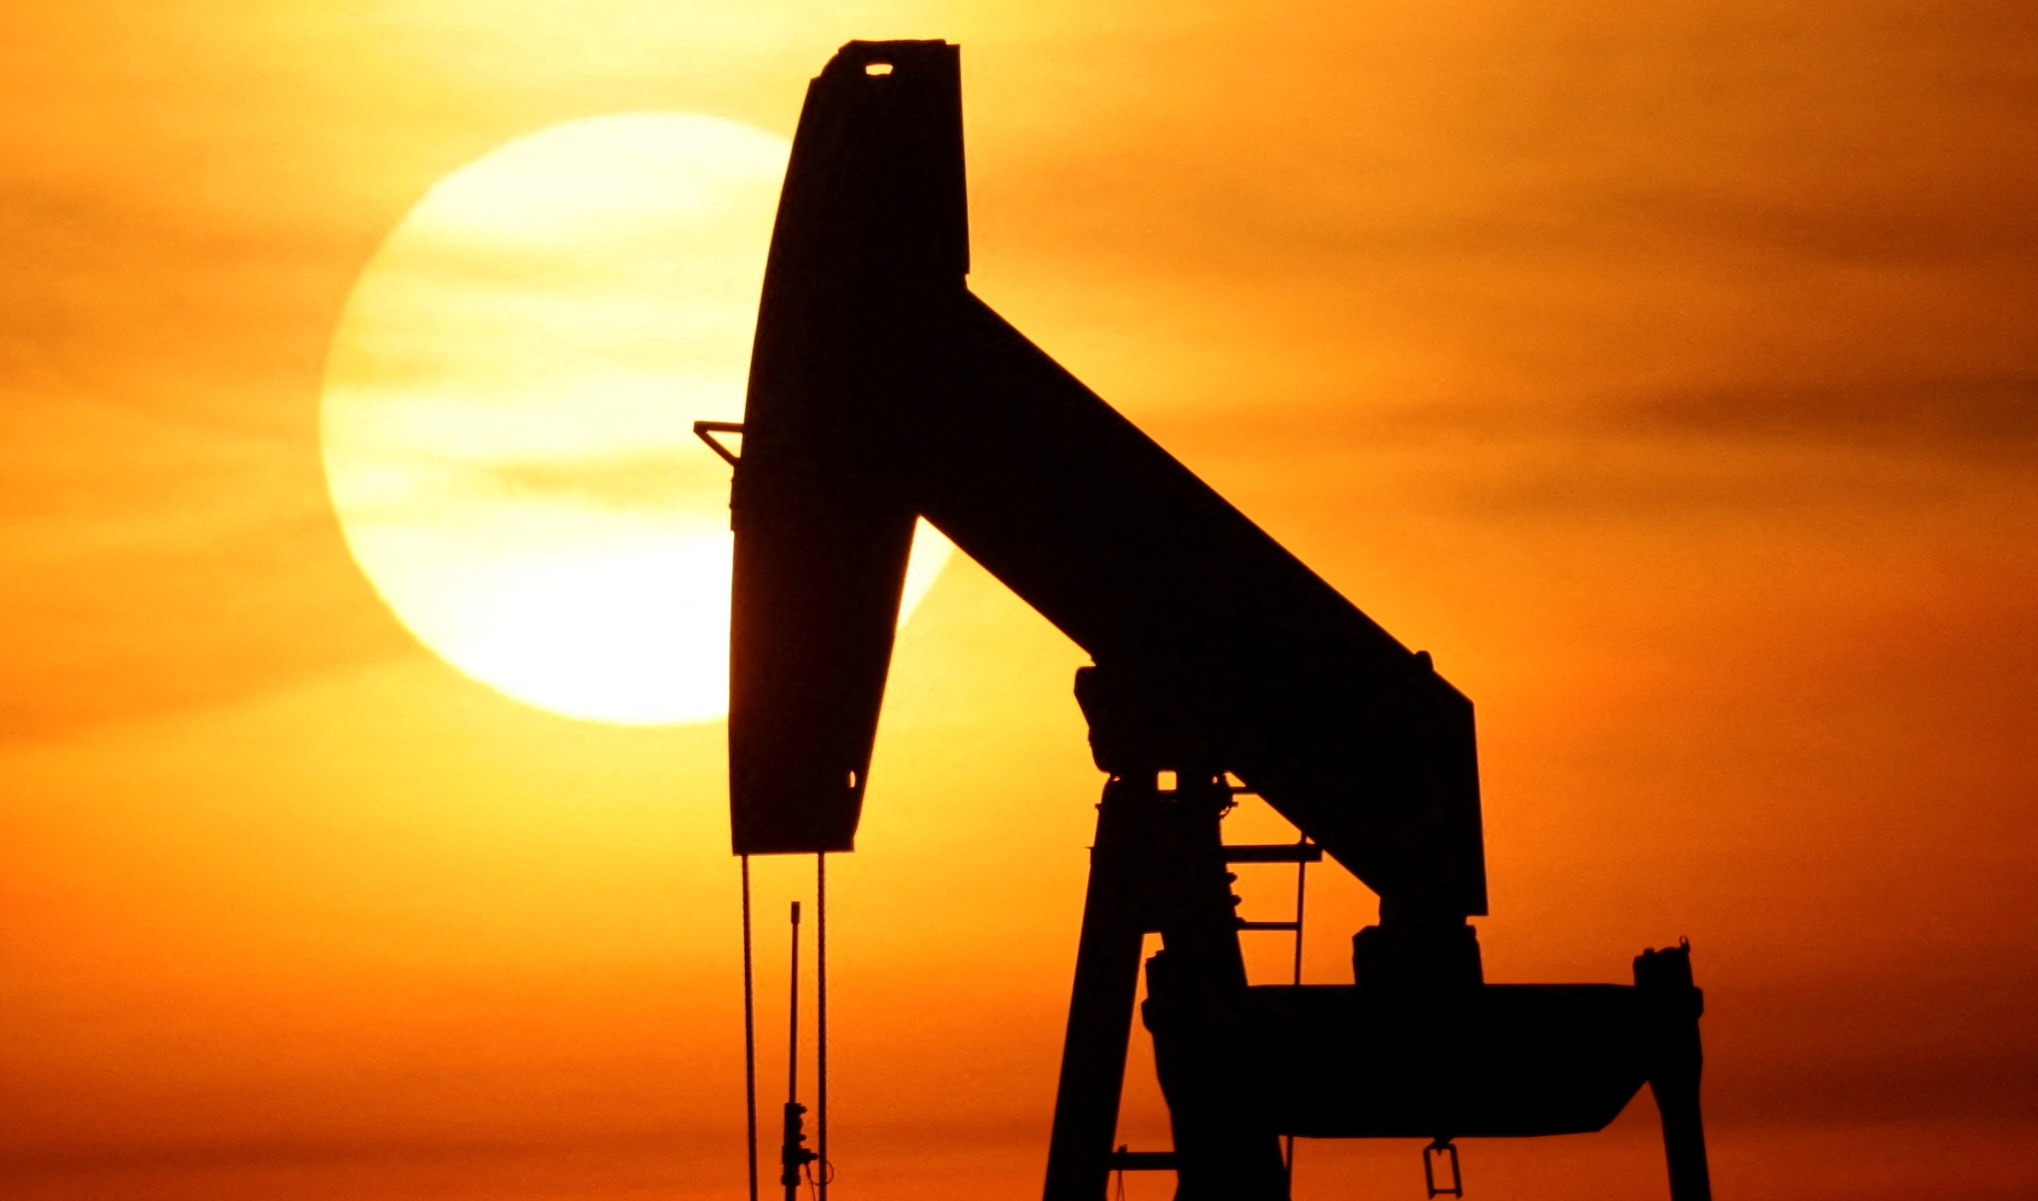 ΟΠΕΚ: Η Σαουδική Αραβία συζητά αύξηση της παραγωγής πετρελαίου